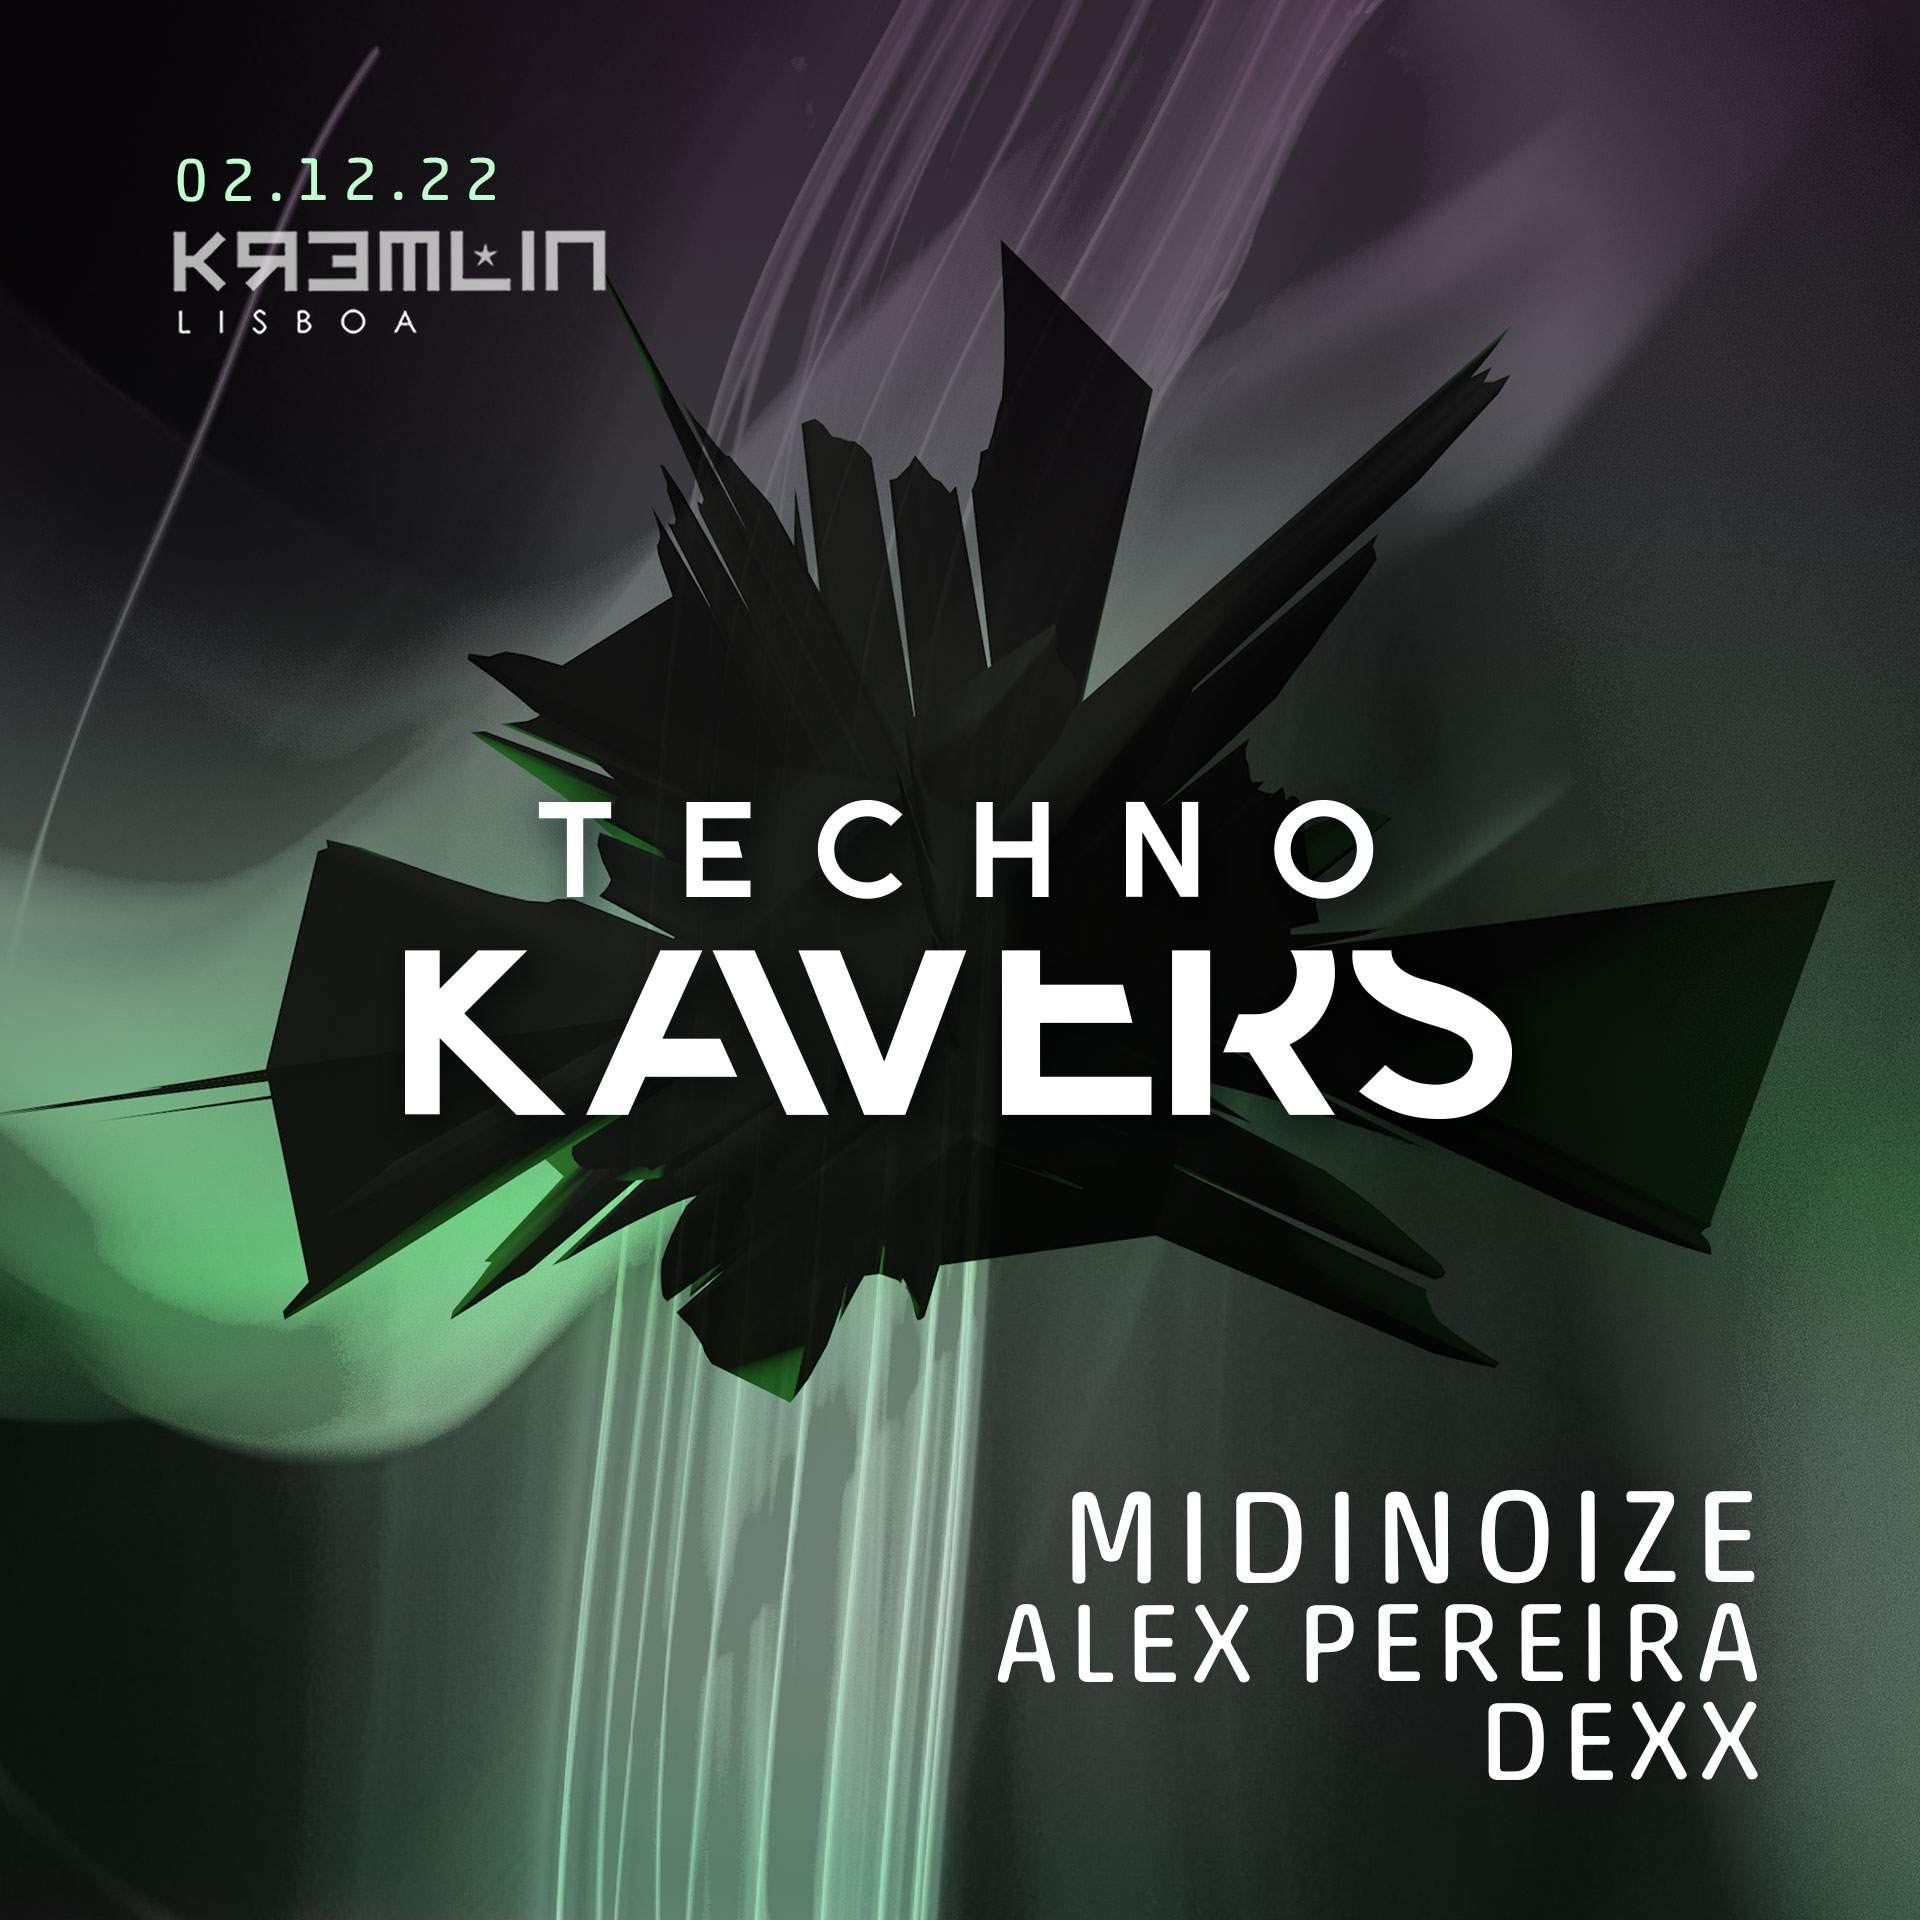 Techno Kavers with Midinoize - Página frontal